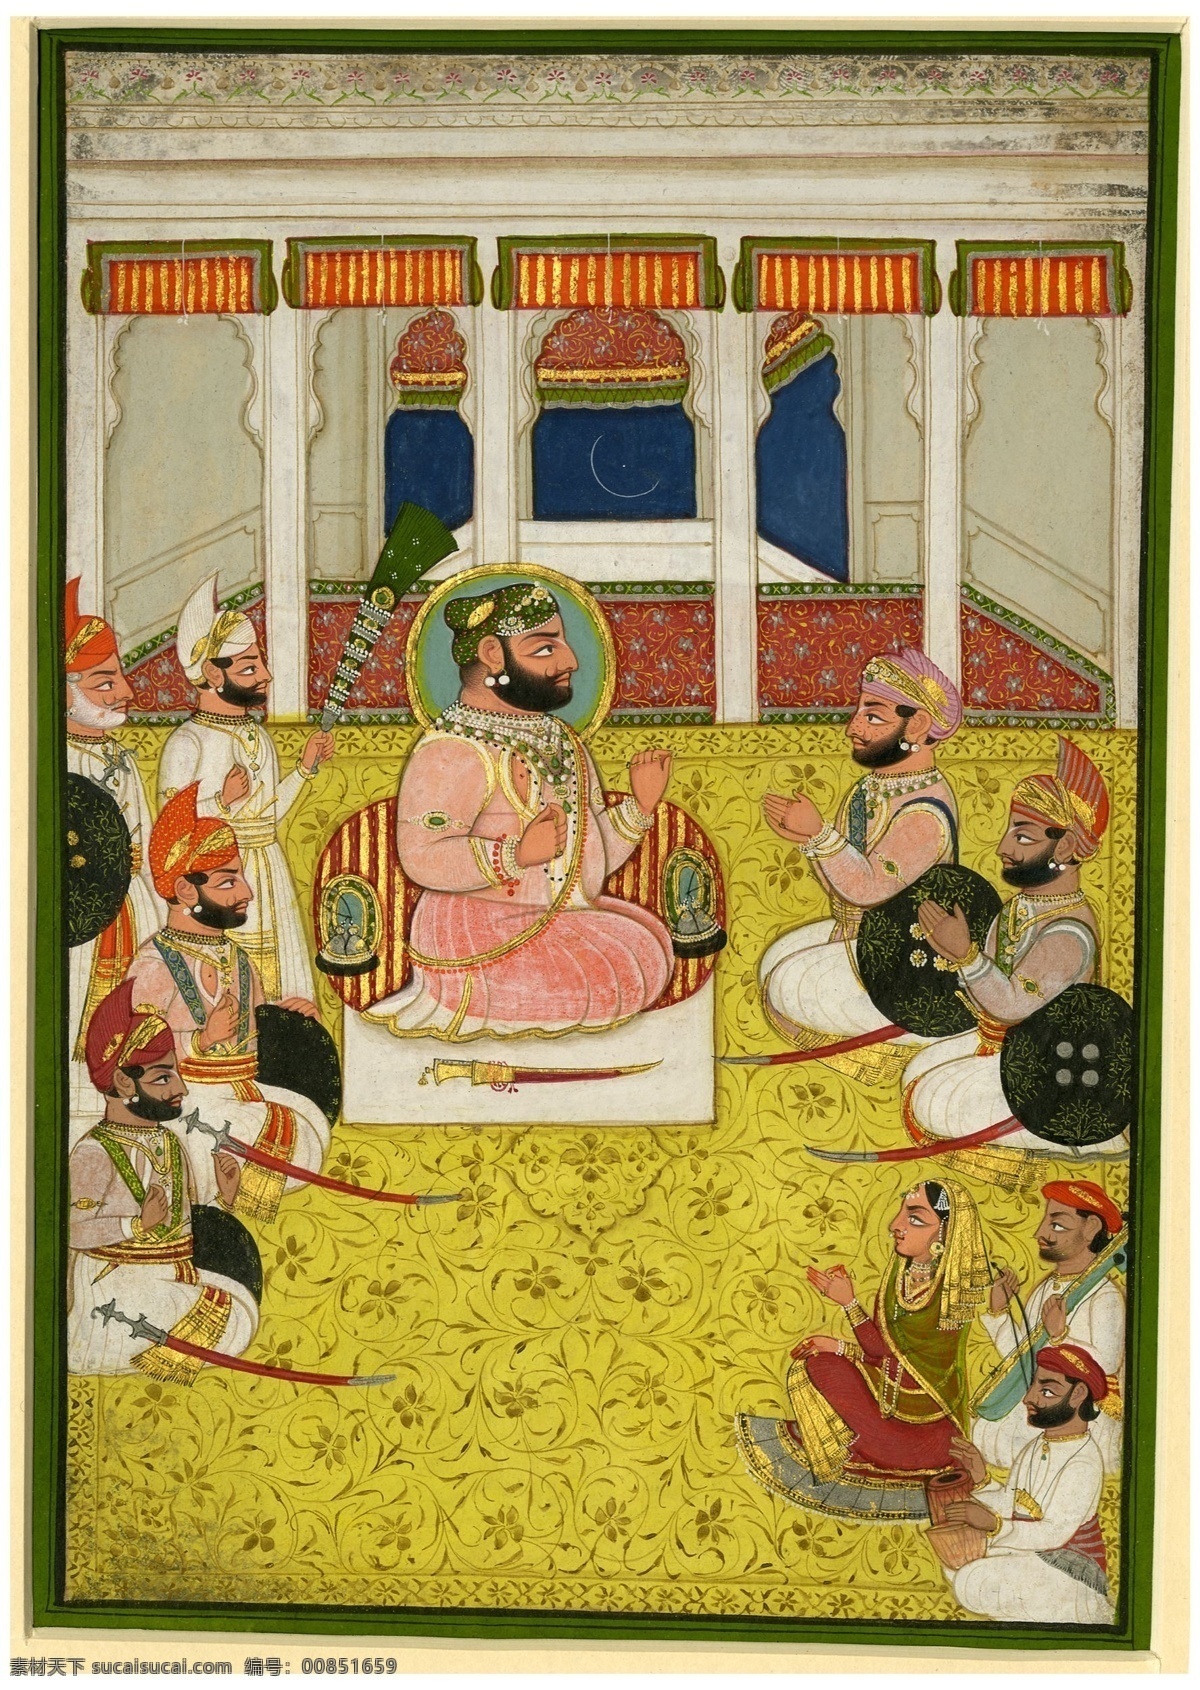 拜见国王 印度绘画 19世纪绘画 世界名画 绘画书法 文化艺术